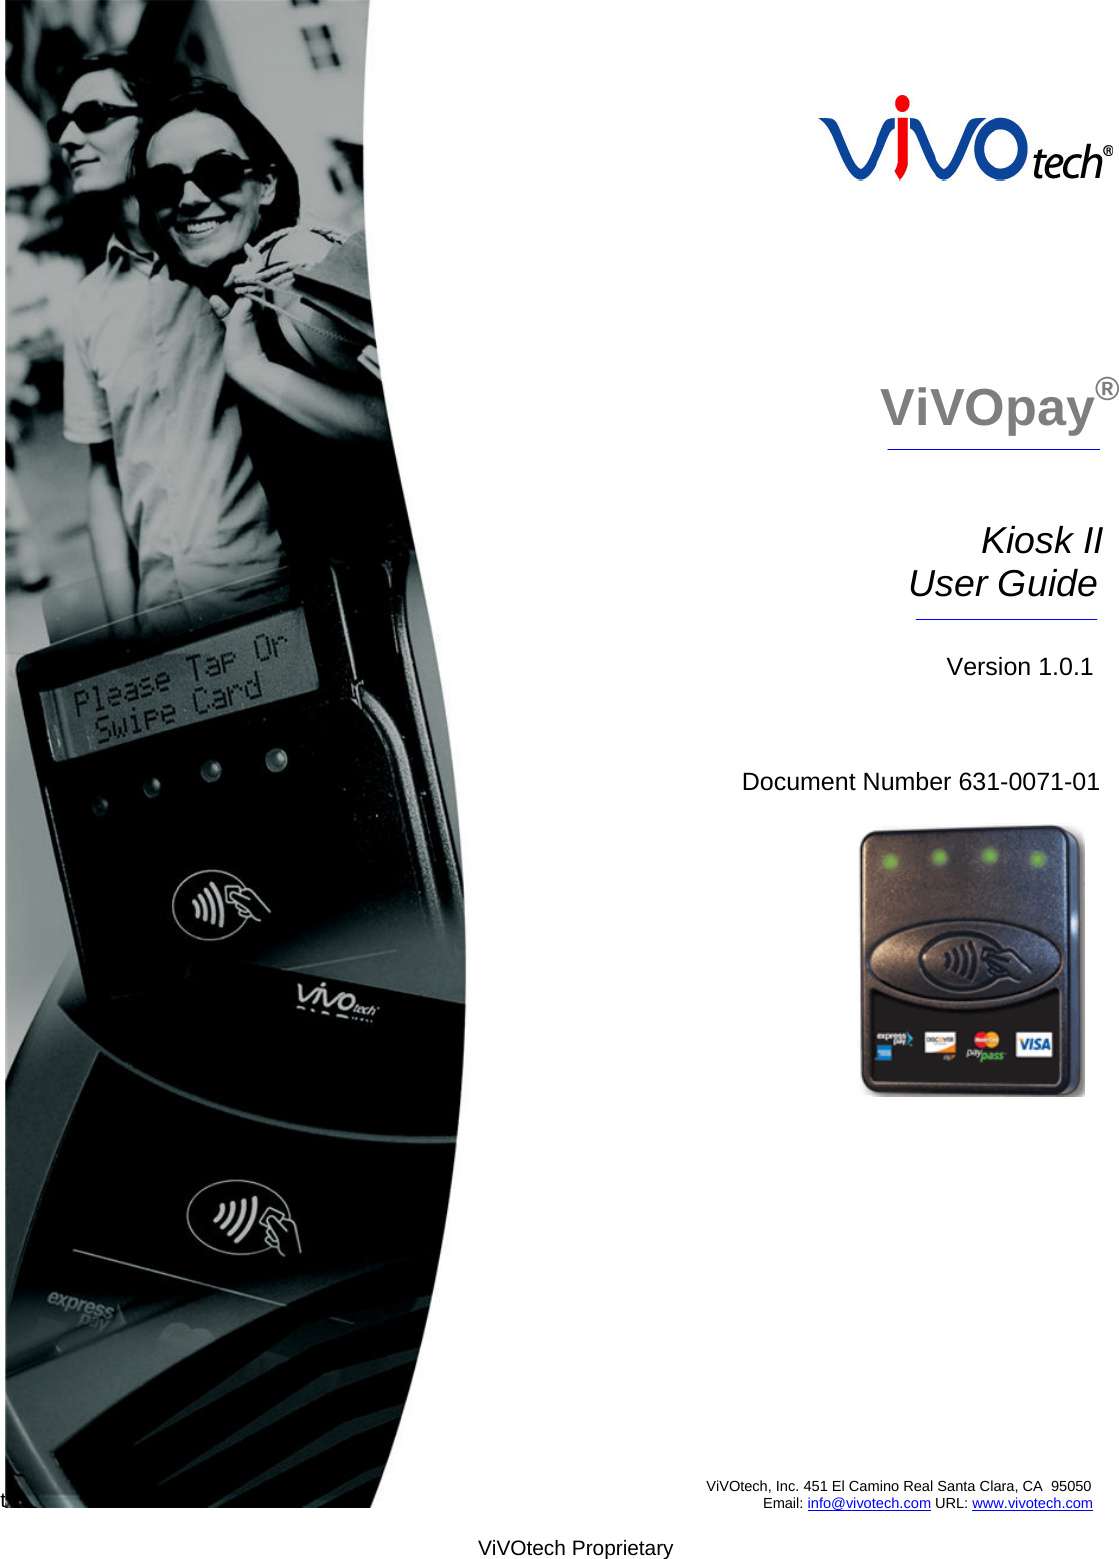                                                                              ViVOpay®                                              Kiosk II                                     User Guide                                                     Version 1.0.1                                  Document Number 631-0071-01  t                                               ViVOtech, Inc. 451 El Camino Real Santa Clara, CA  95050                                                           Email: info@vivotech.com URL: www.vivotech.com  ViVOtech Proprietary 